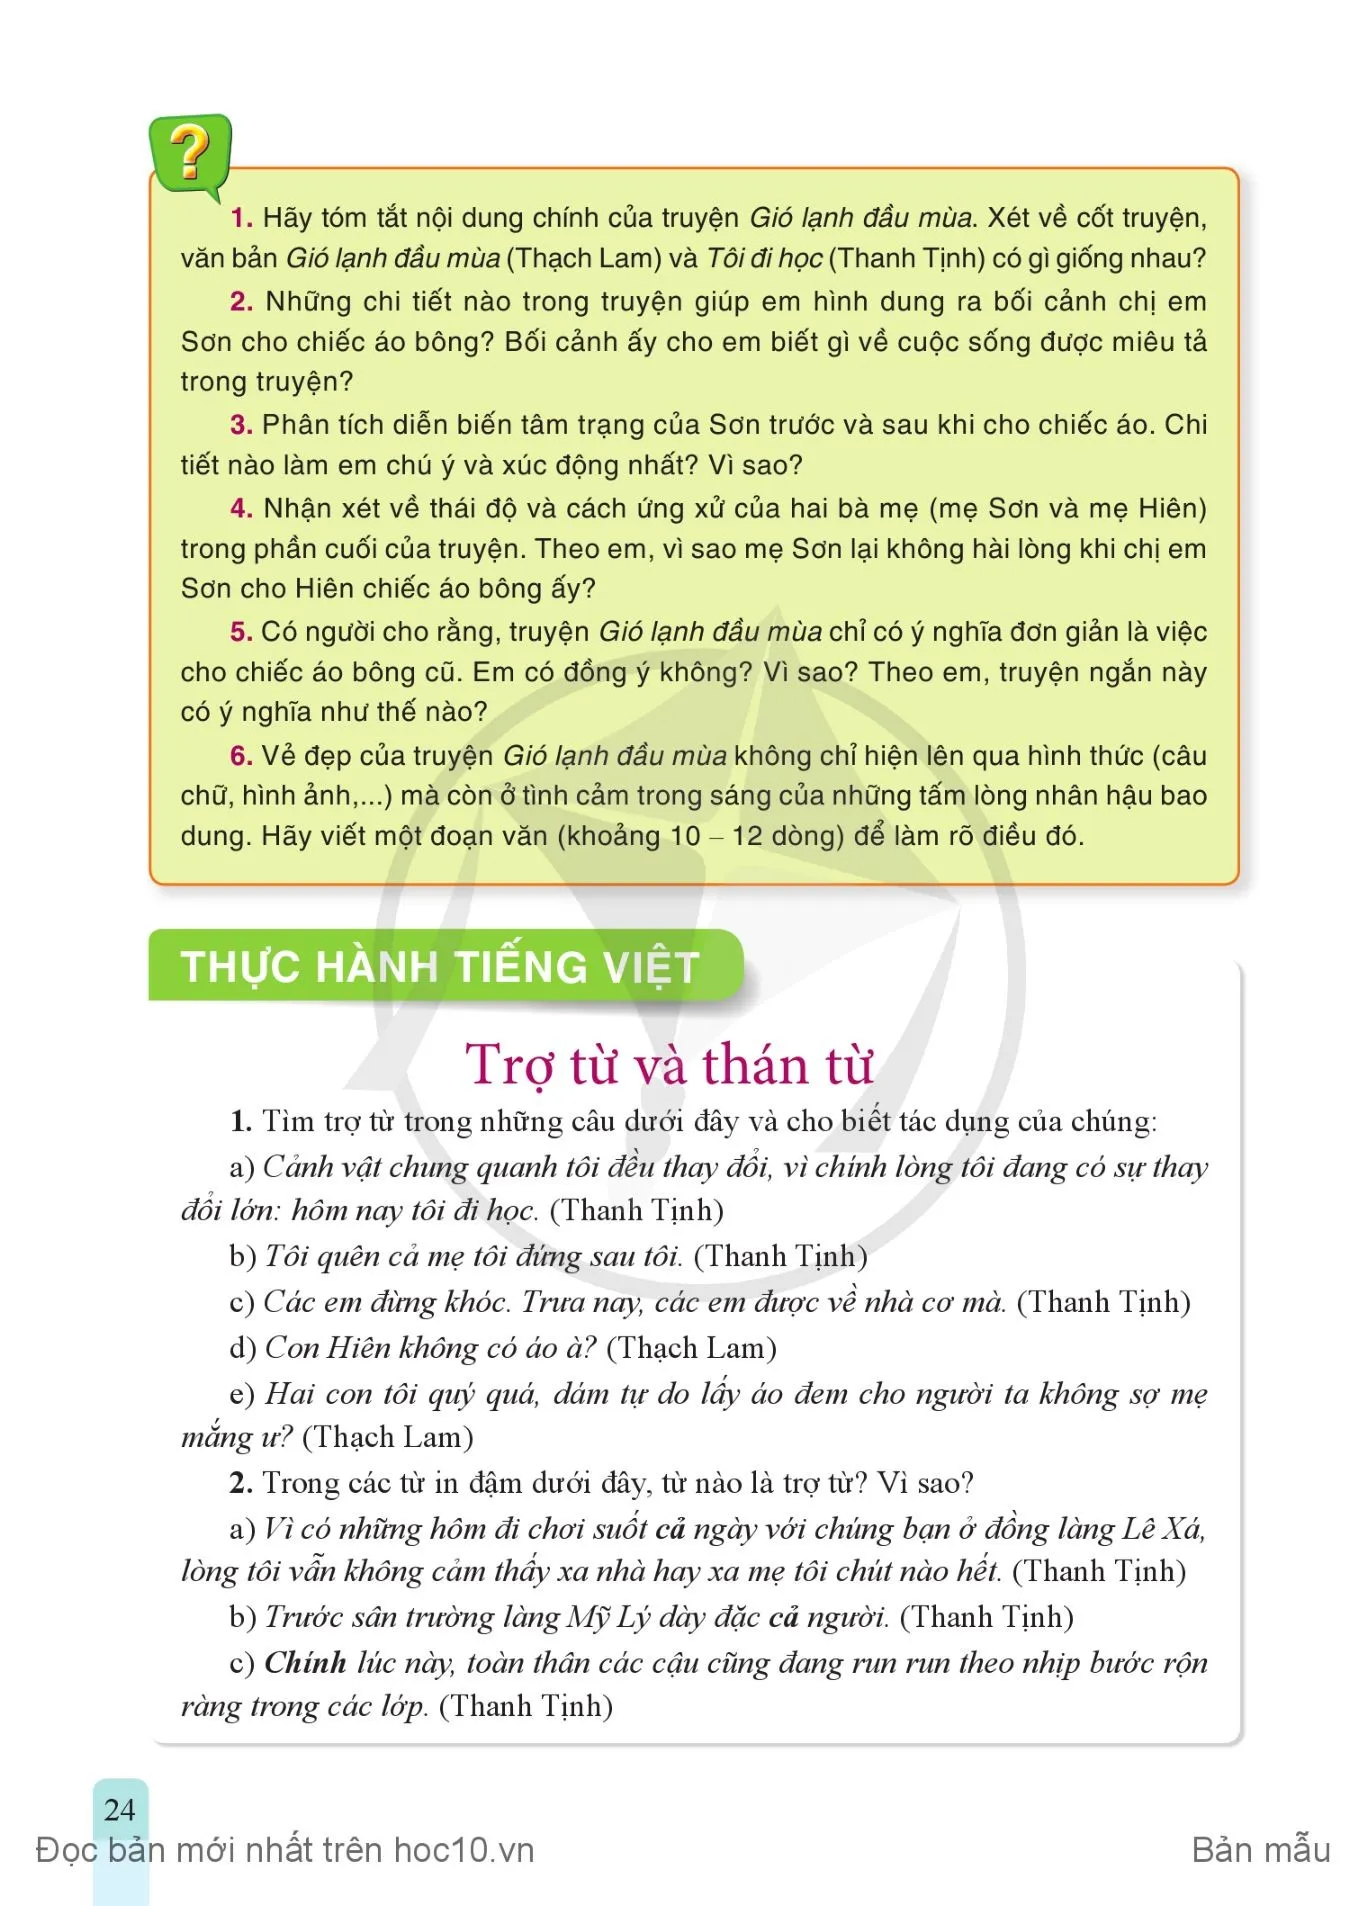 • Thực hành tiếng Việt: Trợ từ và thán từ